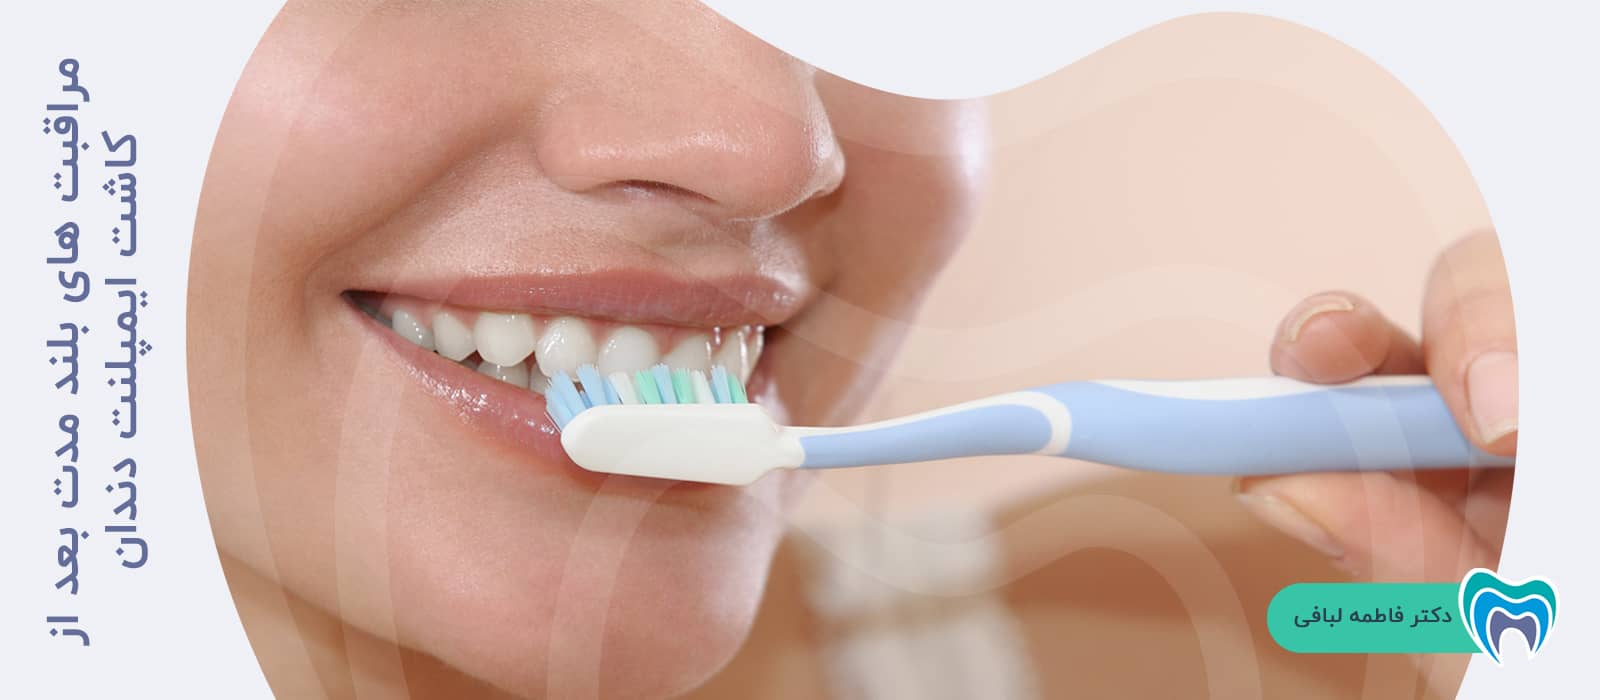 مراقبت های بلند مدت بعد از کاشت ایمپلنت دندان